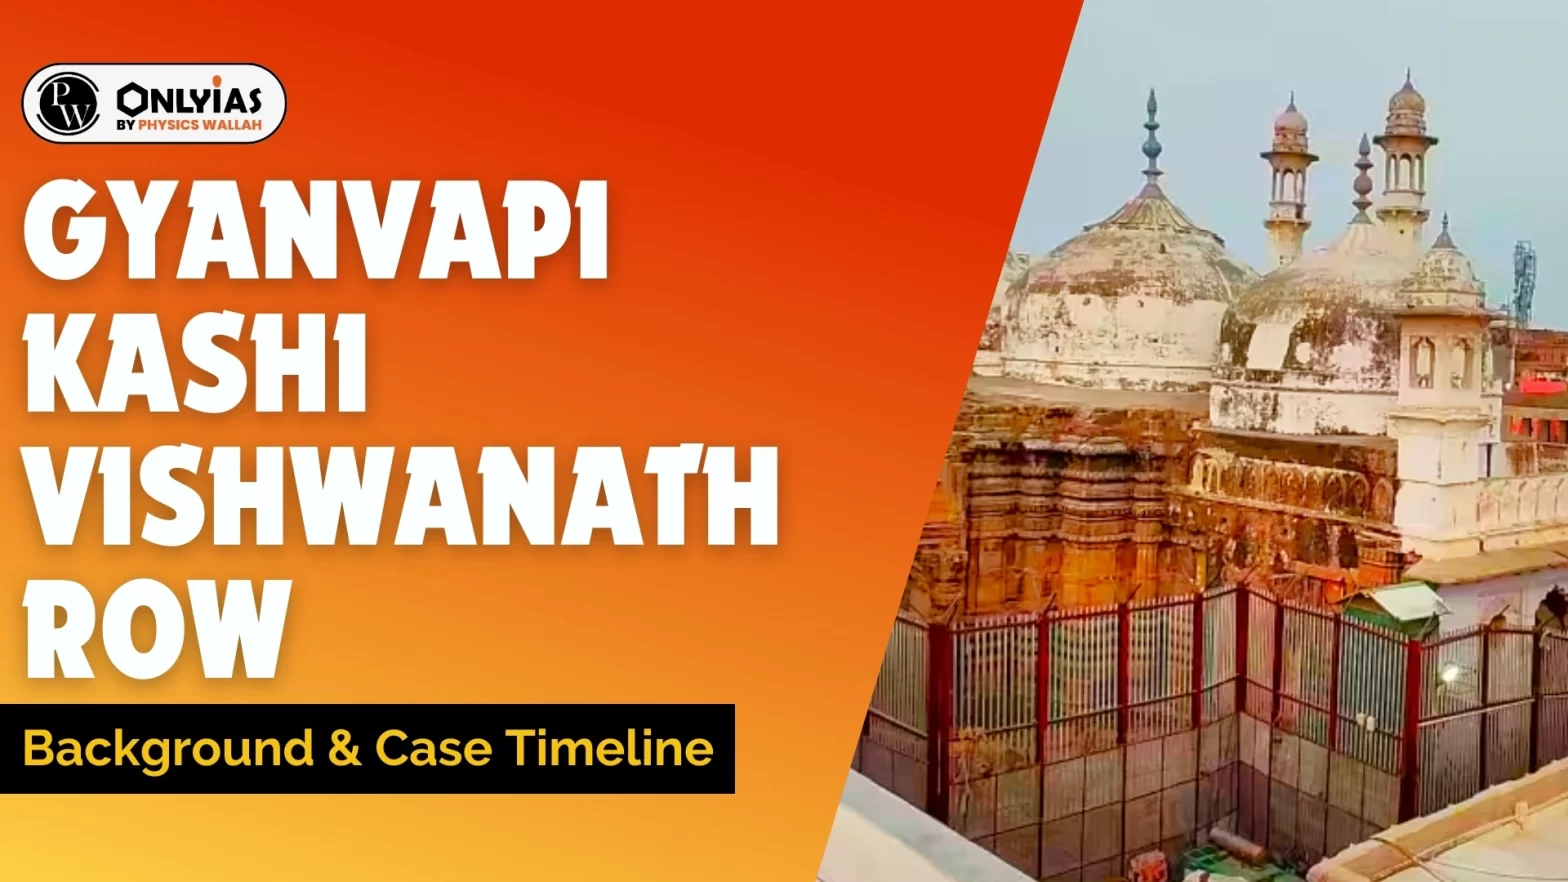 Gyanvapi-Kashi Vishwanath Row: Background & Case Timeline